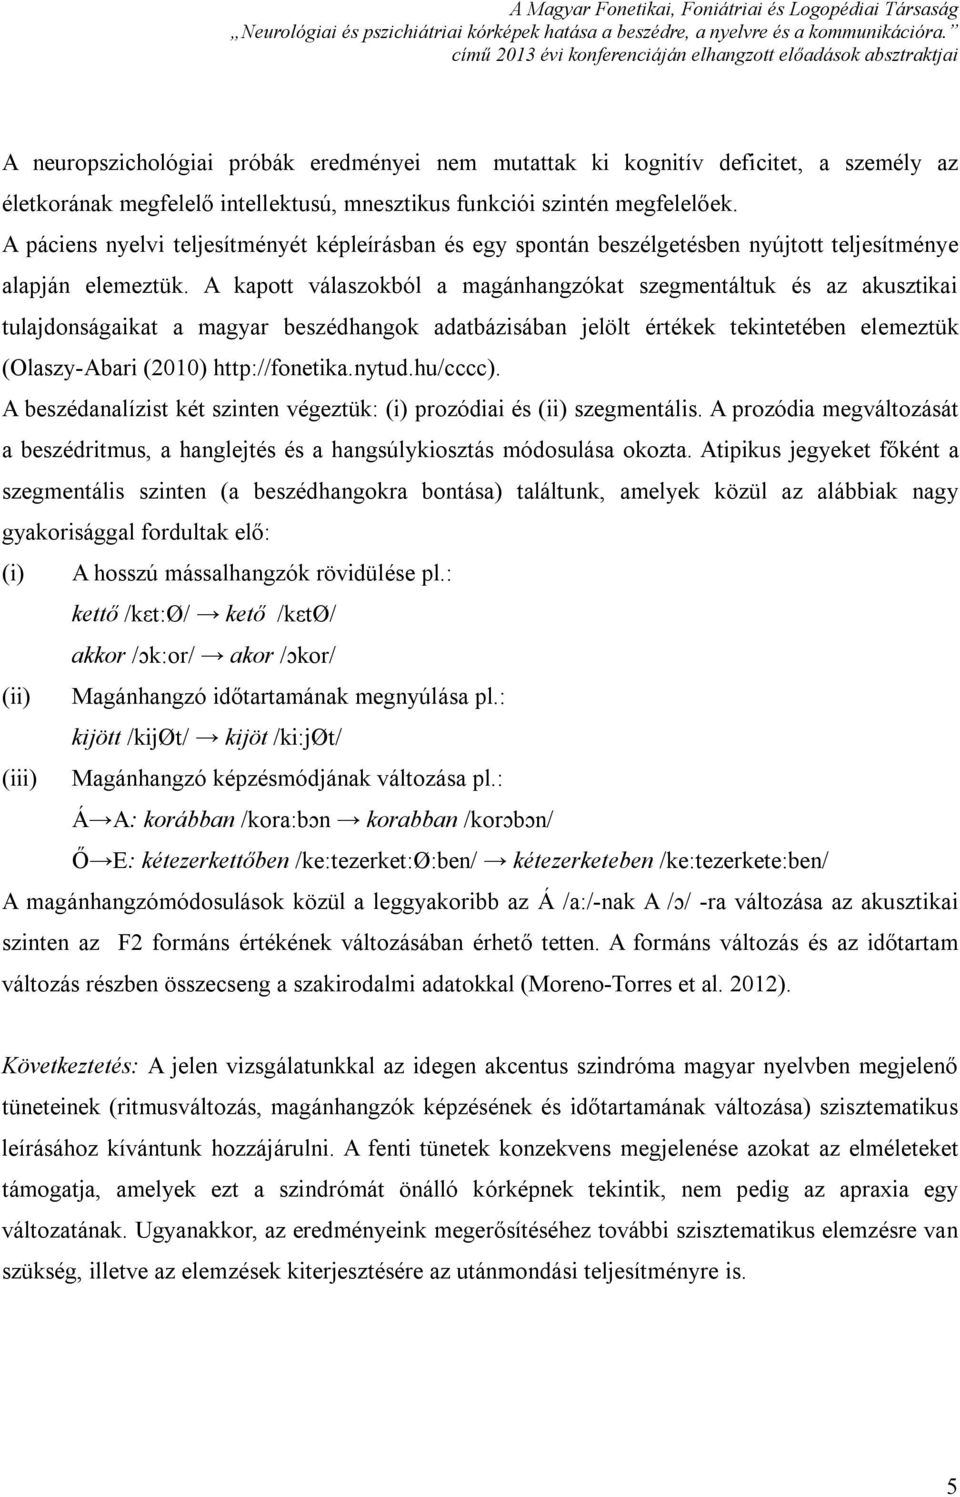 A kapott válaszokból a magánhangzókat szegmentáltuk és az akusztikai tulajdonságaikat a magyar beszédhangok adatbázisában jelölt értékek tekintetében elemeztük (Olaszy-Abari (2010) http://fonetika.